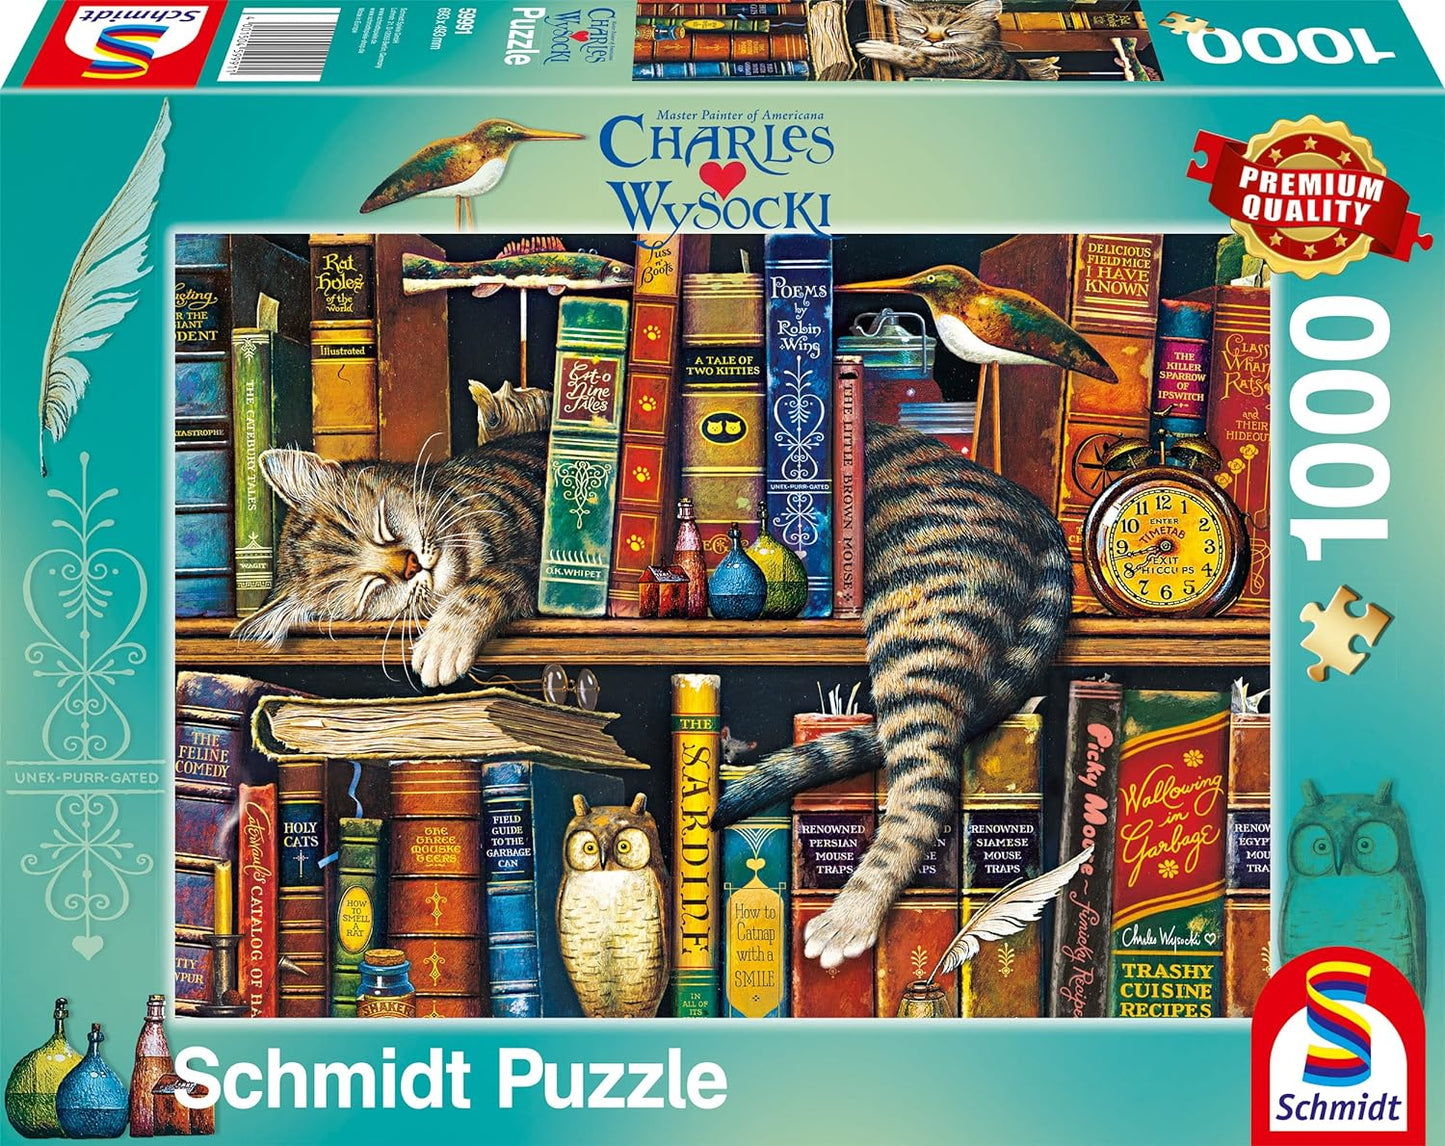 Schmidt - Charles Wysocki: Frederick the Literate - 1000 Piece Jigsaw Puzzle